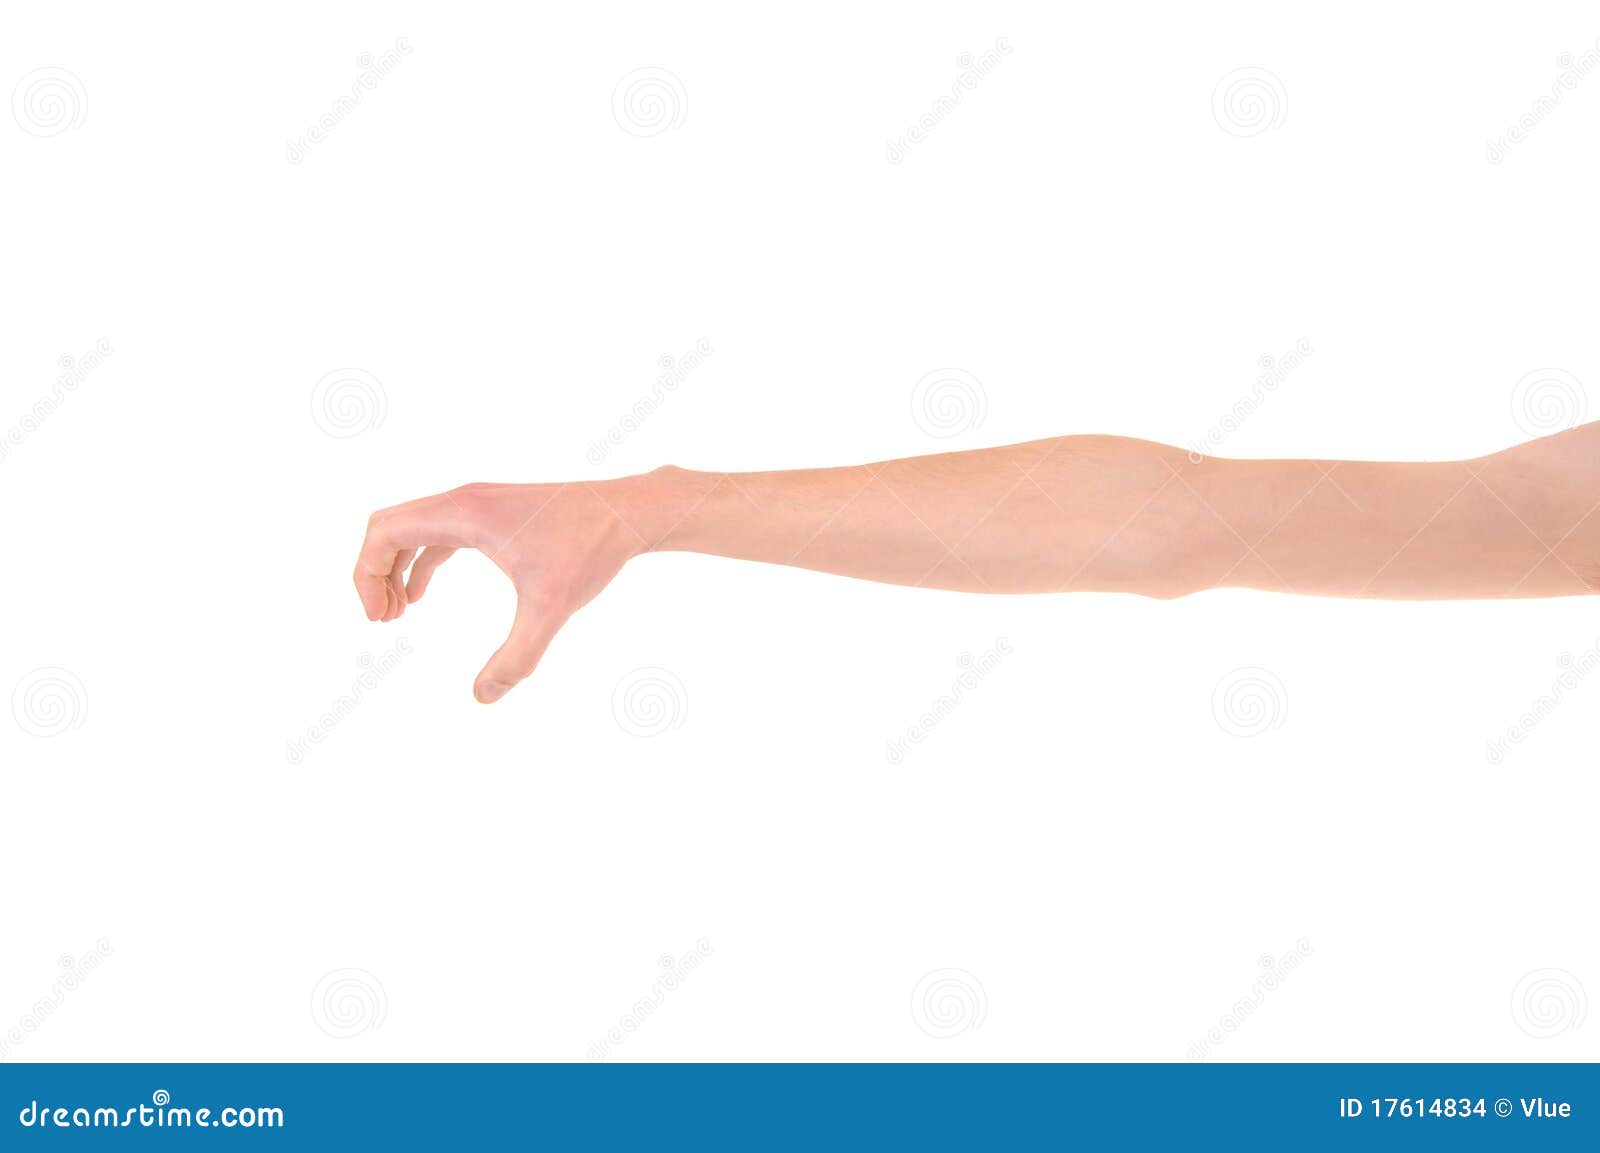 hand reaching and grabbing